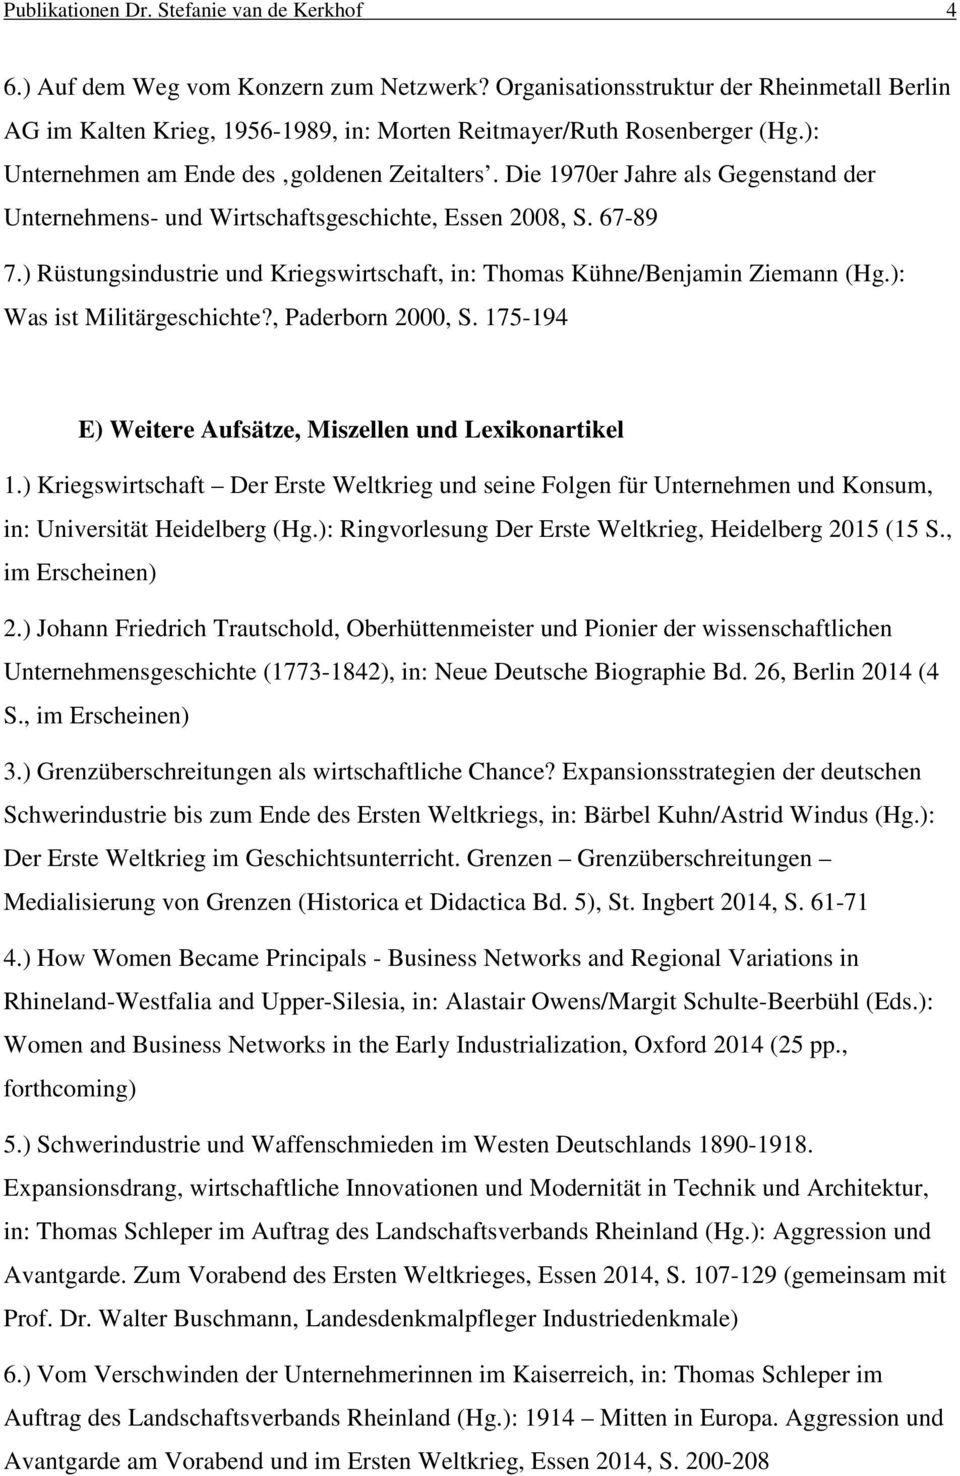 Die 1970er Jahre als Gegenstand der Unternehmens- und Wirtschaftsgeschichte, Essen 2008, S. 67-89 7.) Rüstungsindustrie und Kriegswirtschaft, in: Thomas Kühne/Benjamin Ziemann (Hg.